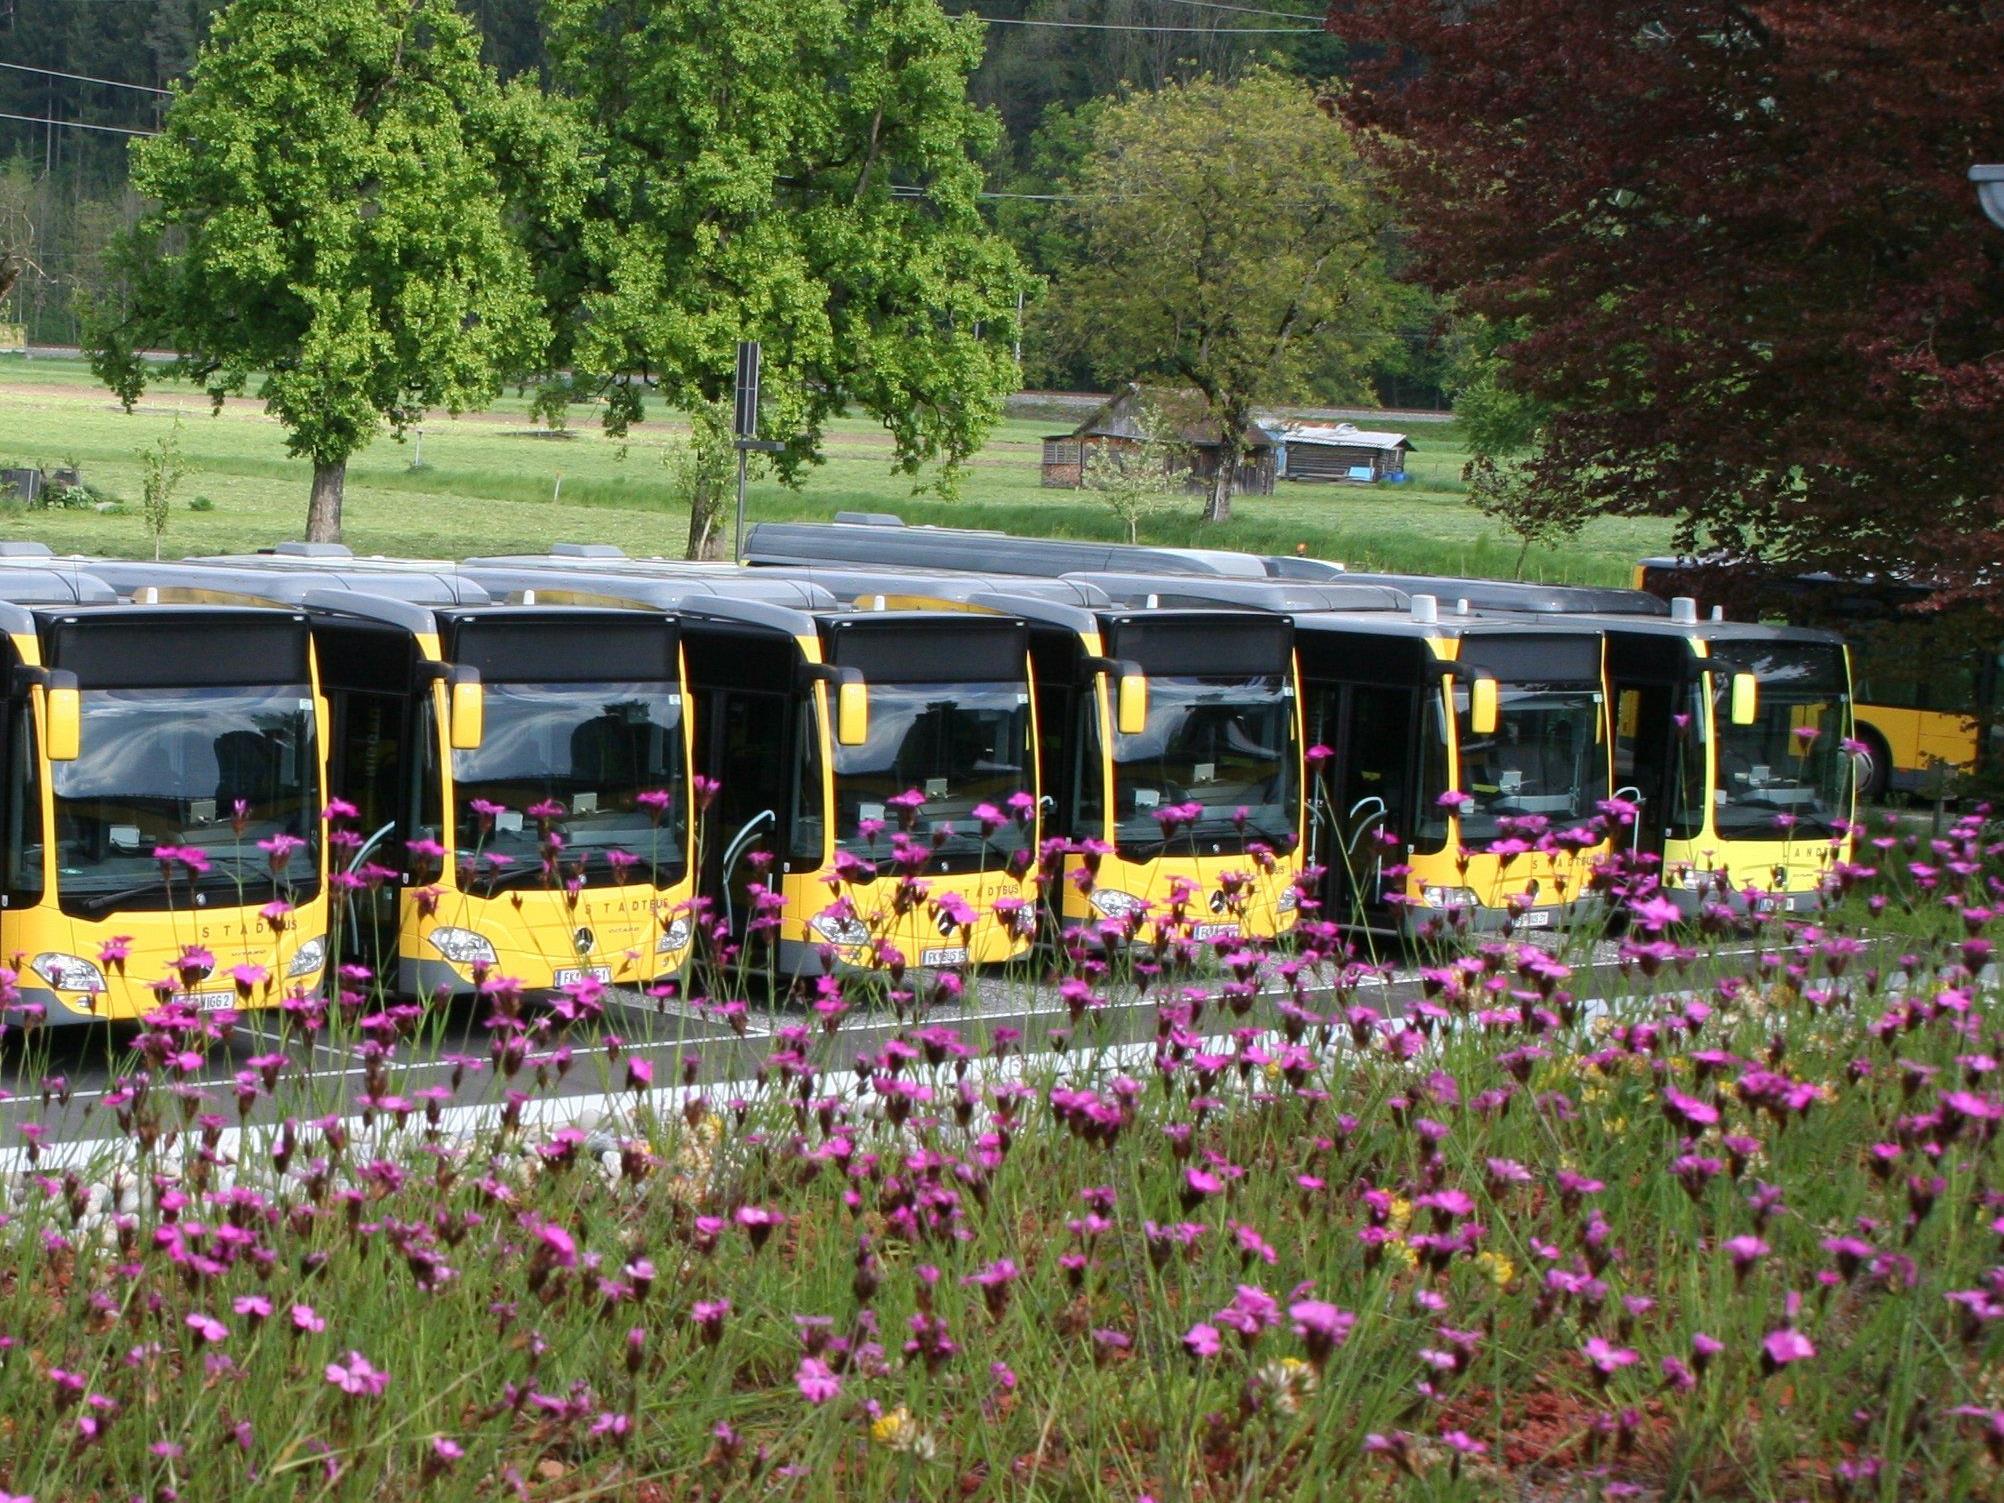 Blick vom begrünten Flachdach auf einen Teil der umweltfreundlichen Busflotte des Rankweiler Busunternehmens Niggbus. Im Zentrum der Parkfläche steht eine vierzig Jahre alte Rotbuche.